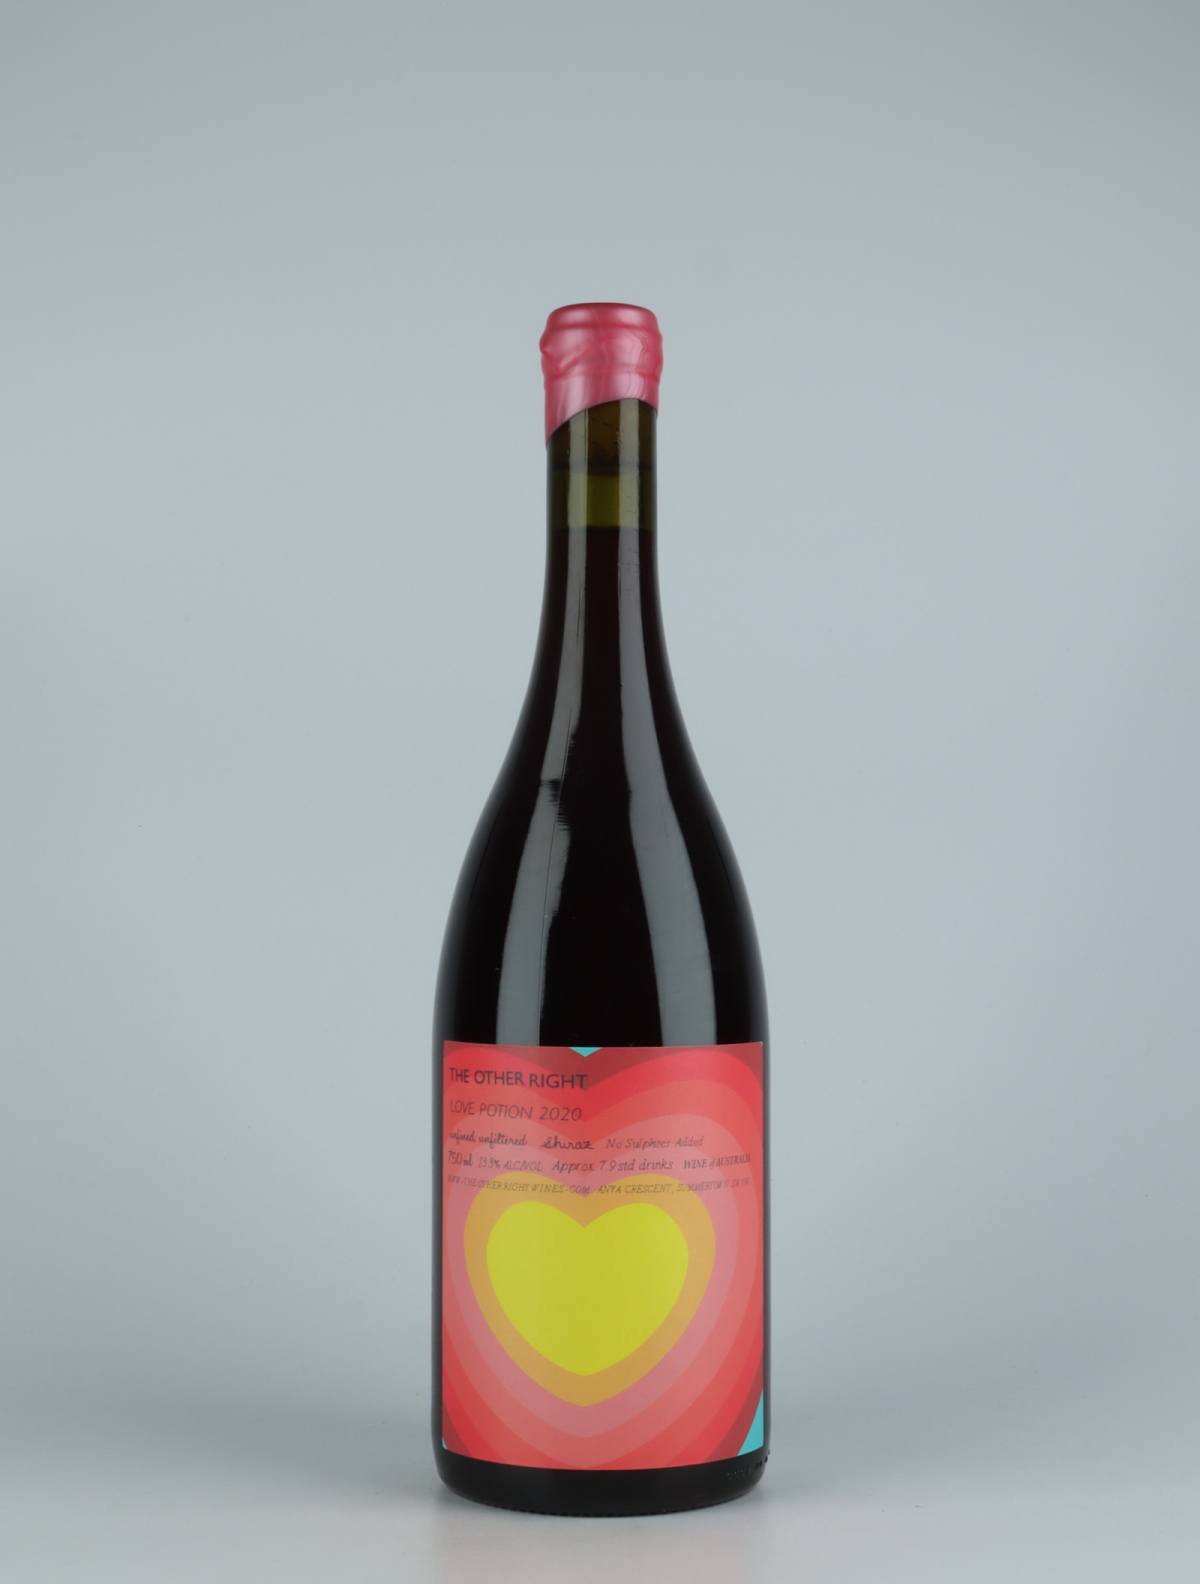 En flaske 2020 Love Potion Rødvin fra The Other Right, Adelaide Hills i Australien